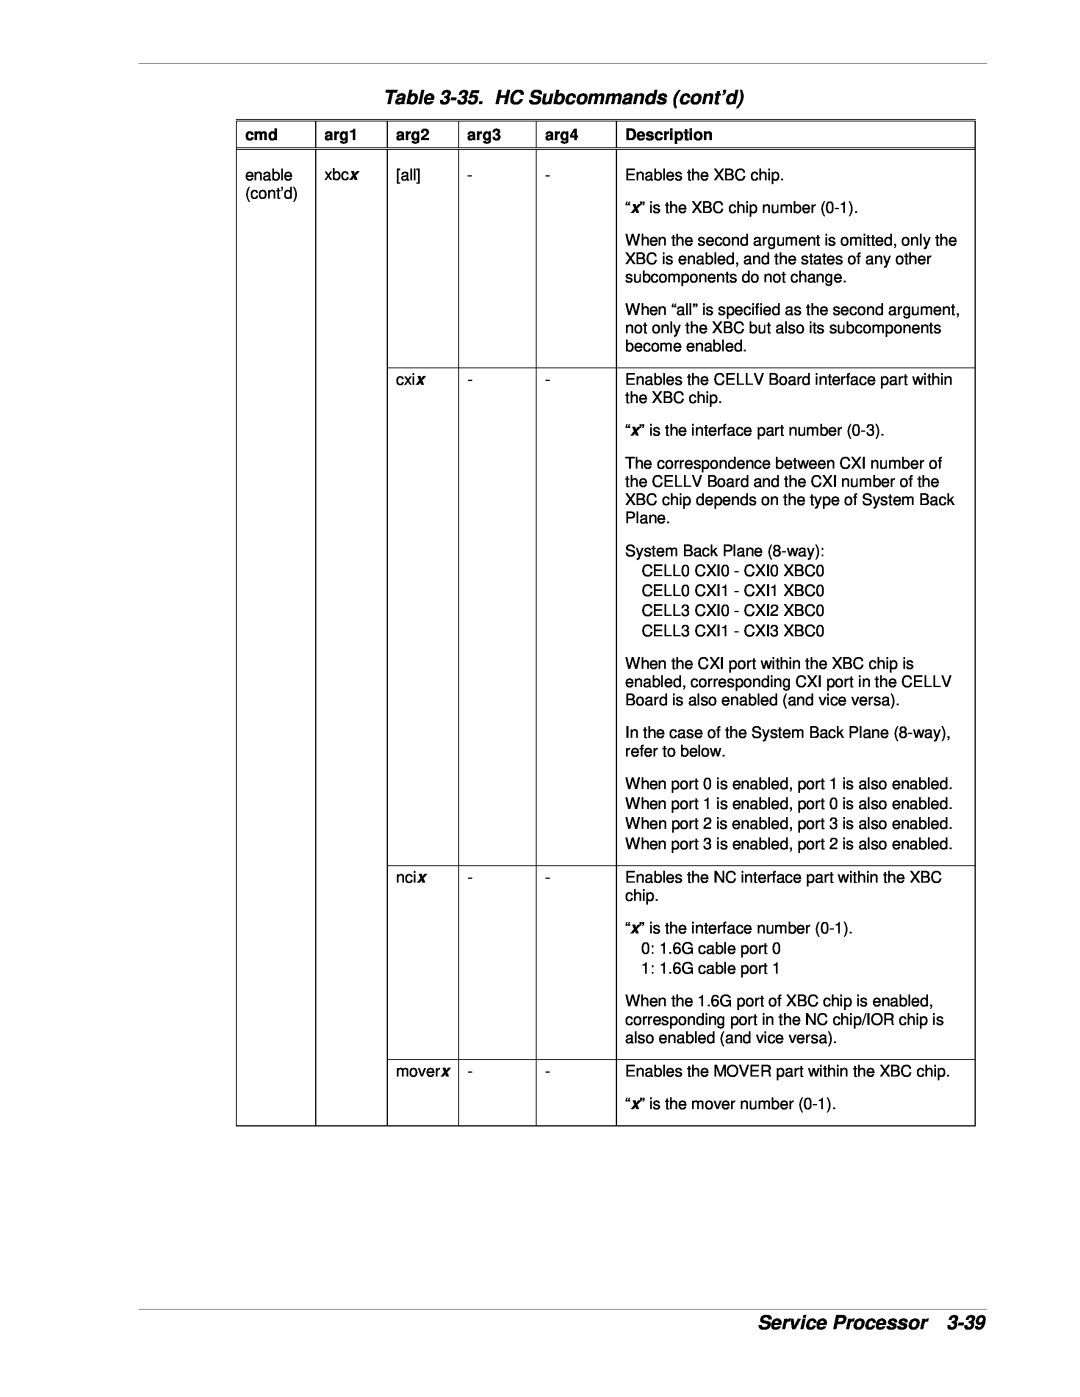 NEC 1080Xd manual 35. HC Subcommands cont’d, Service Processor, arg1, arg2, arg3, arg4, Description 